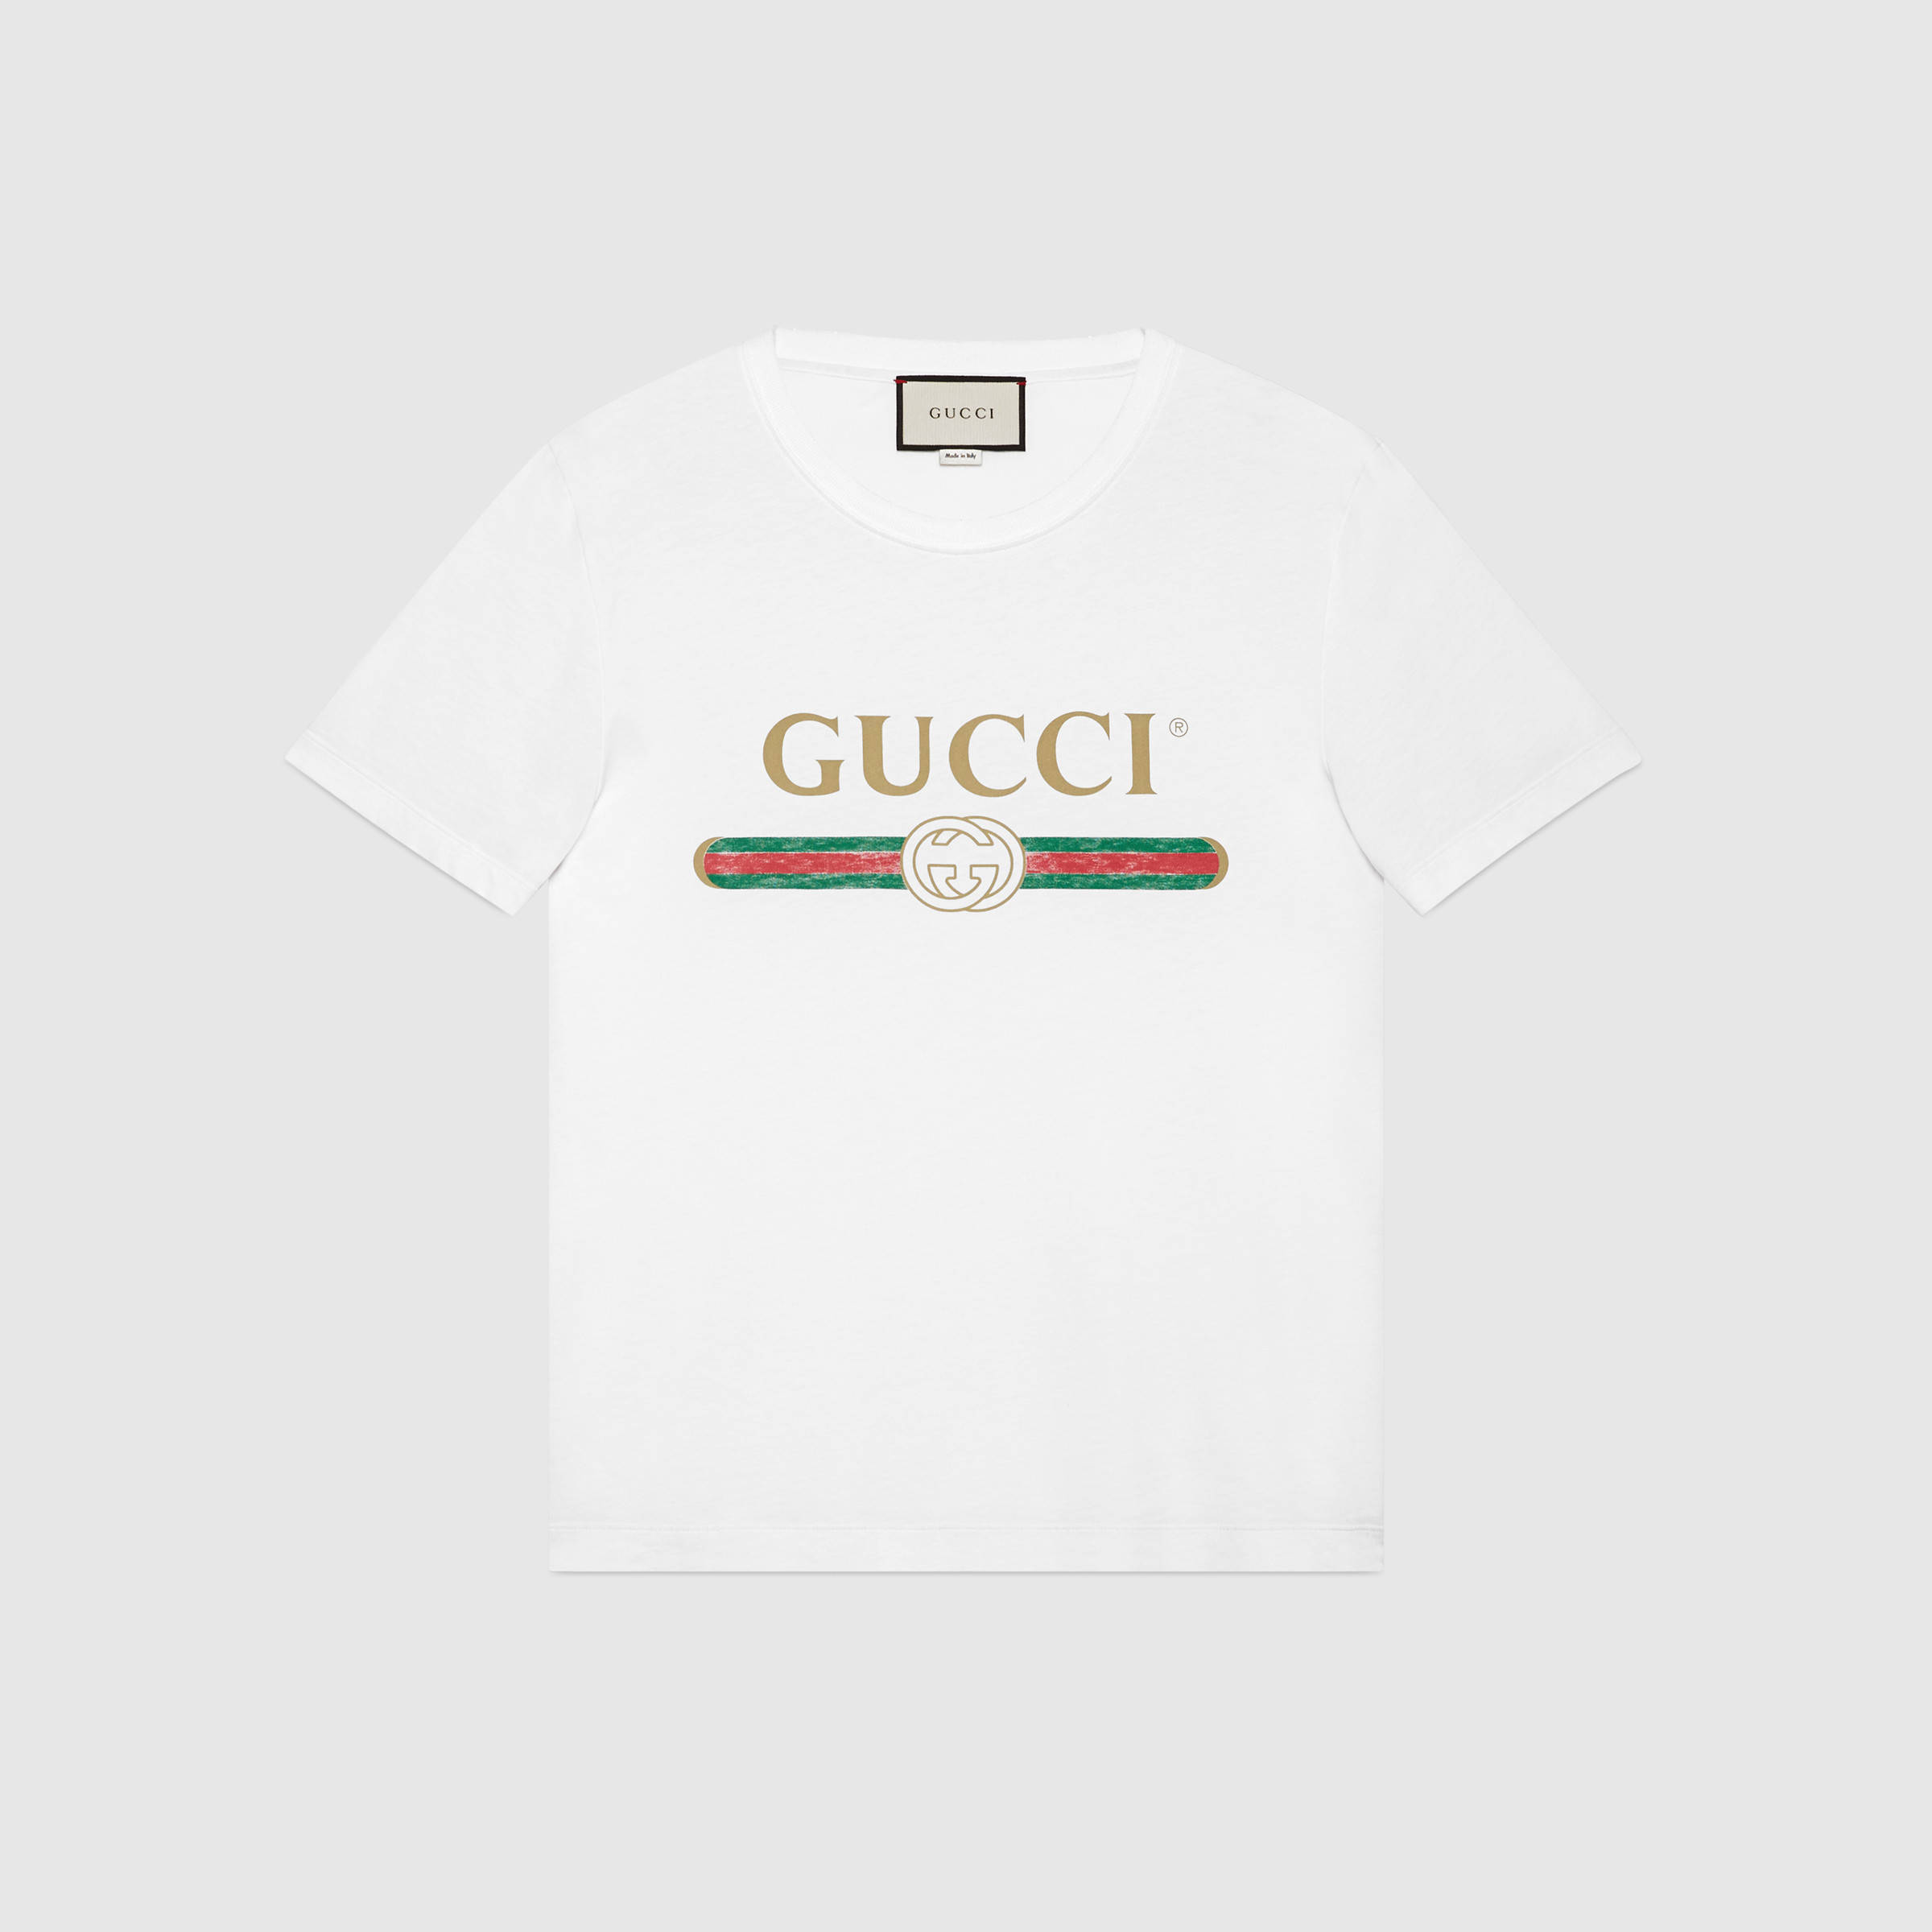 Gucci classic logo shirt, Men's Fashion 